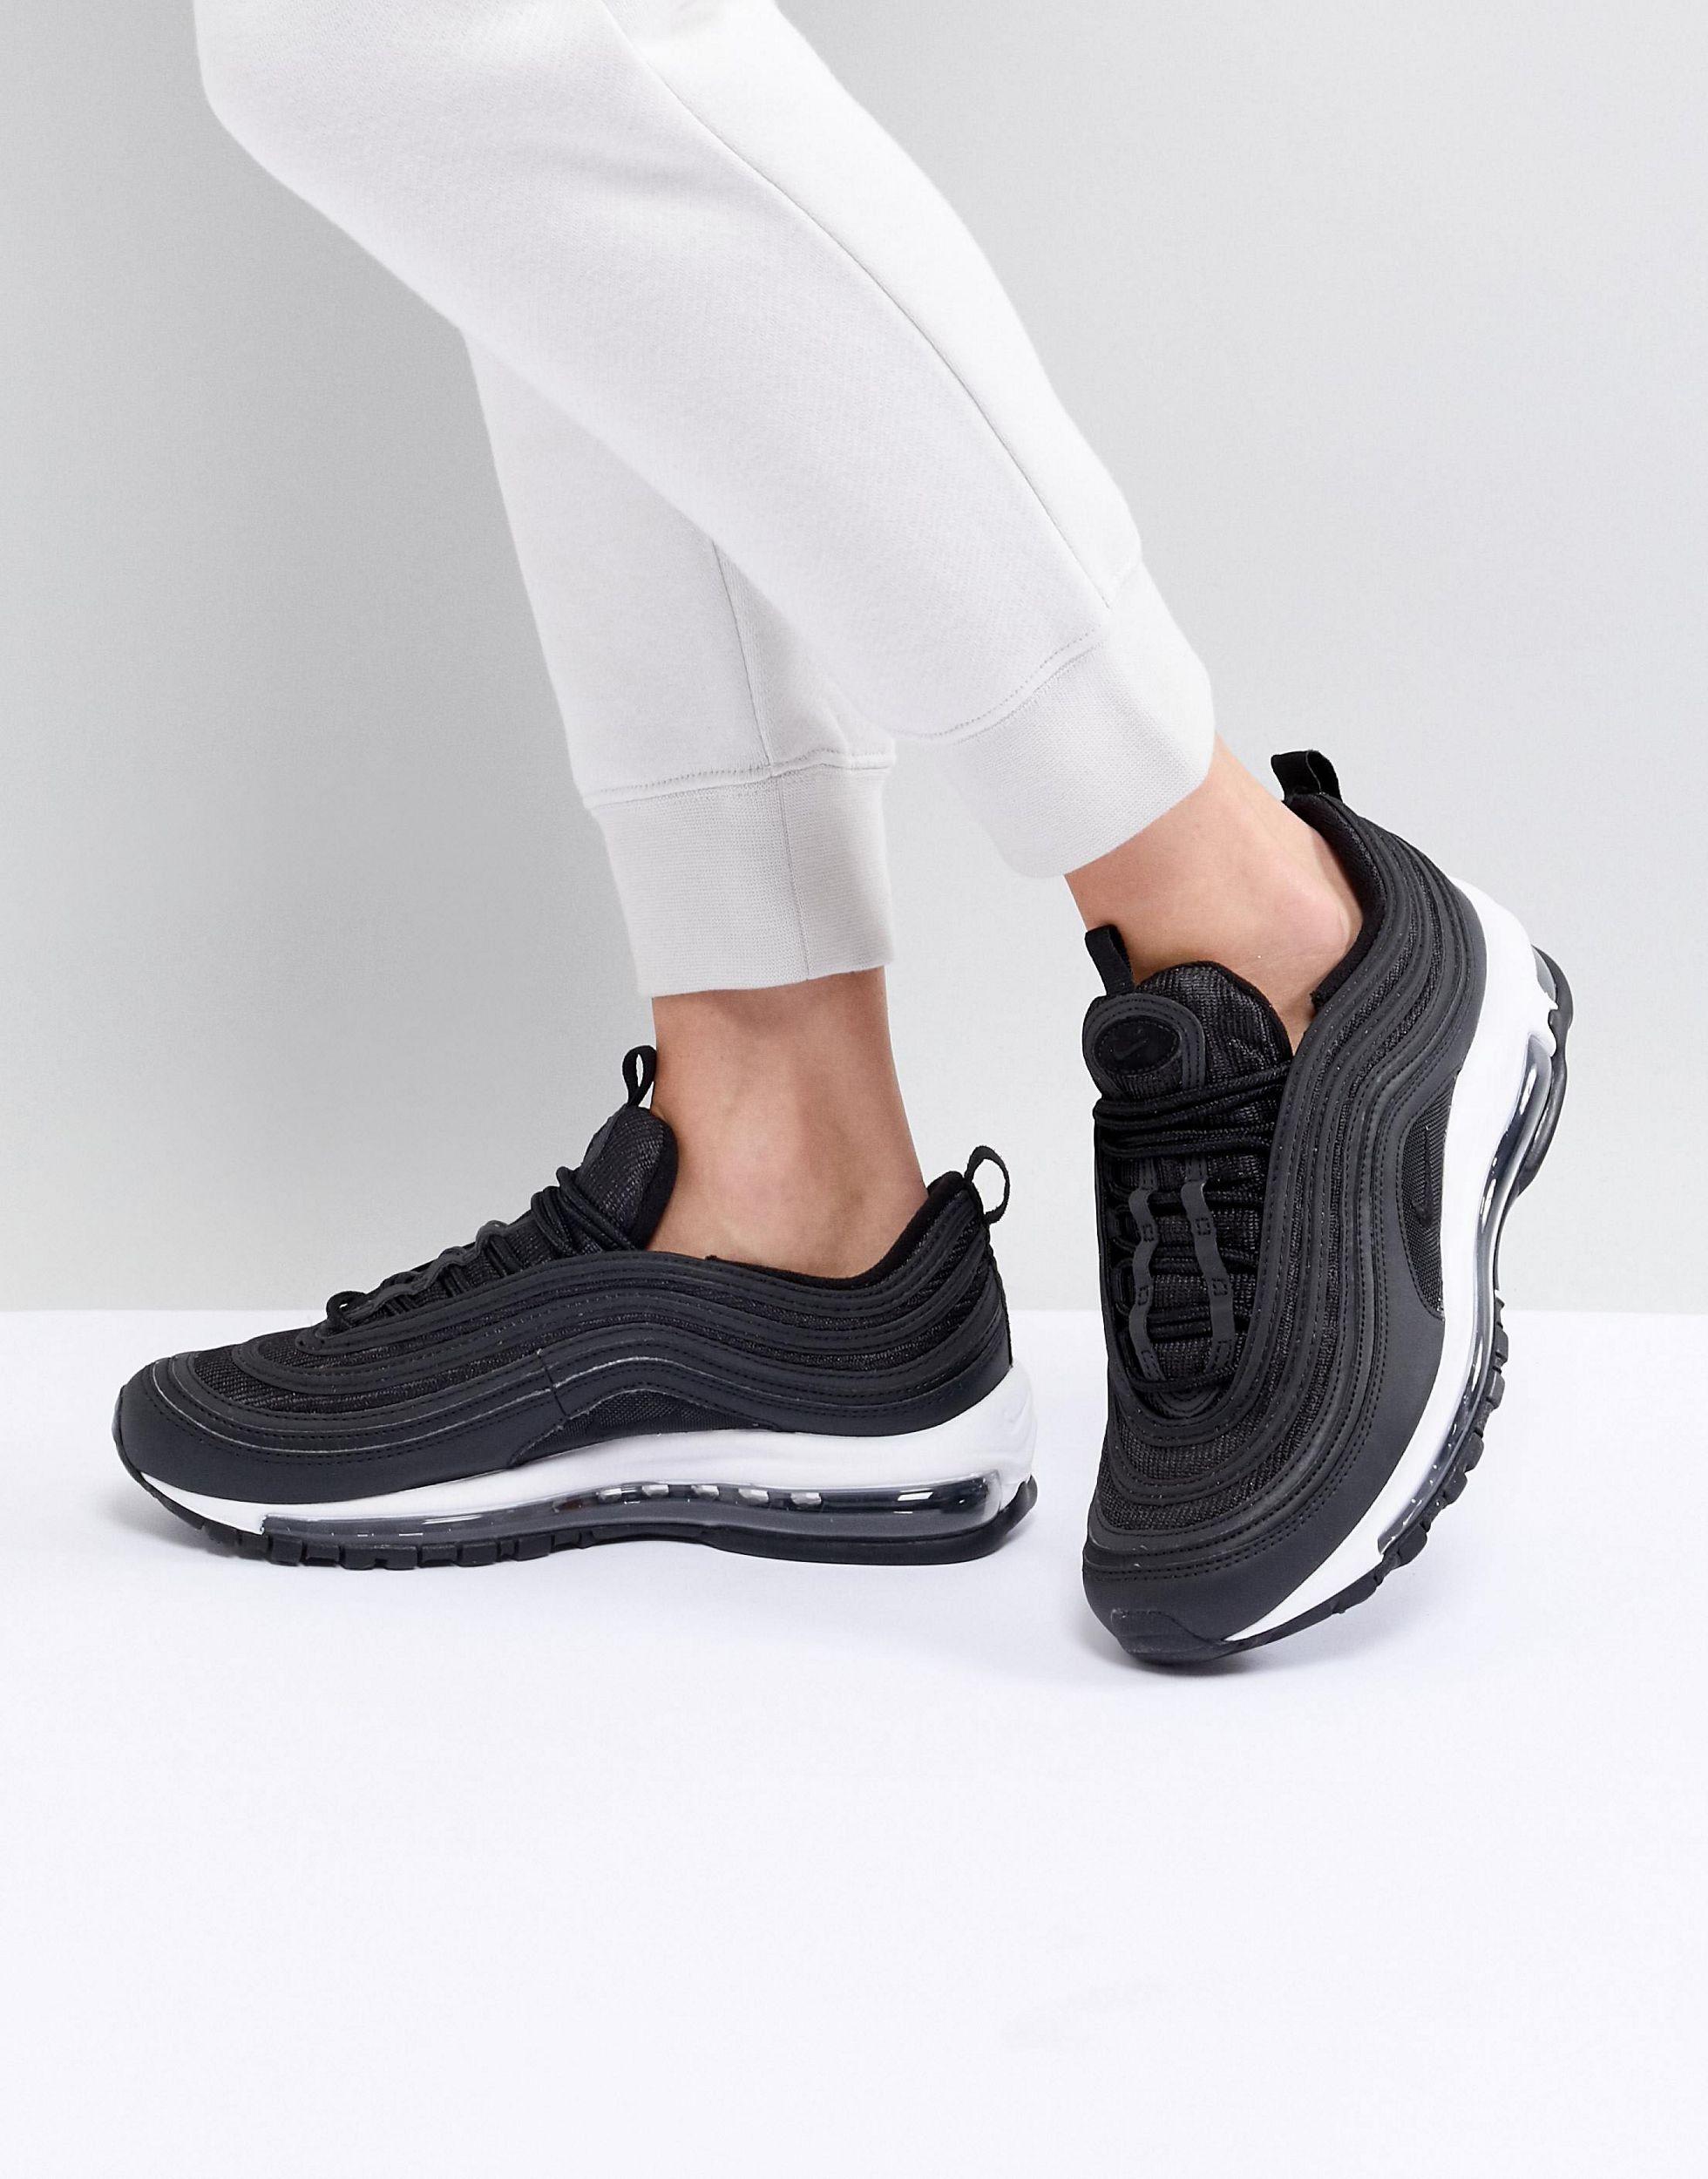 Inconsciente conveniencia Inadecuado Zapatillas negras y blancas Air Max 97 Nike de color Negro | Lyst